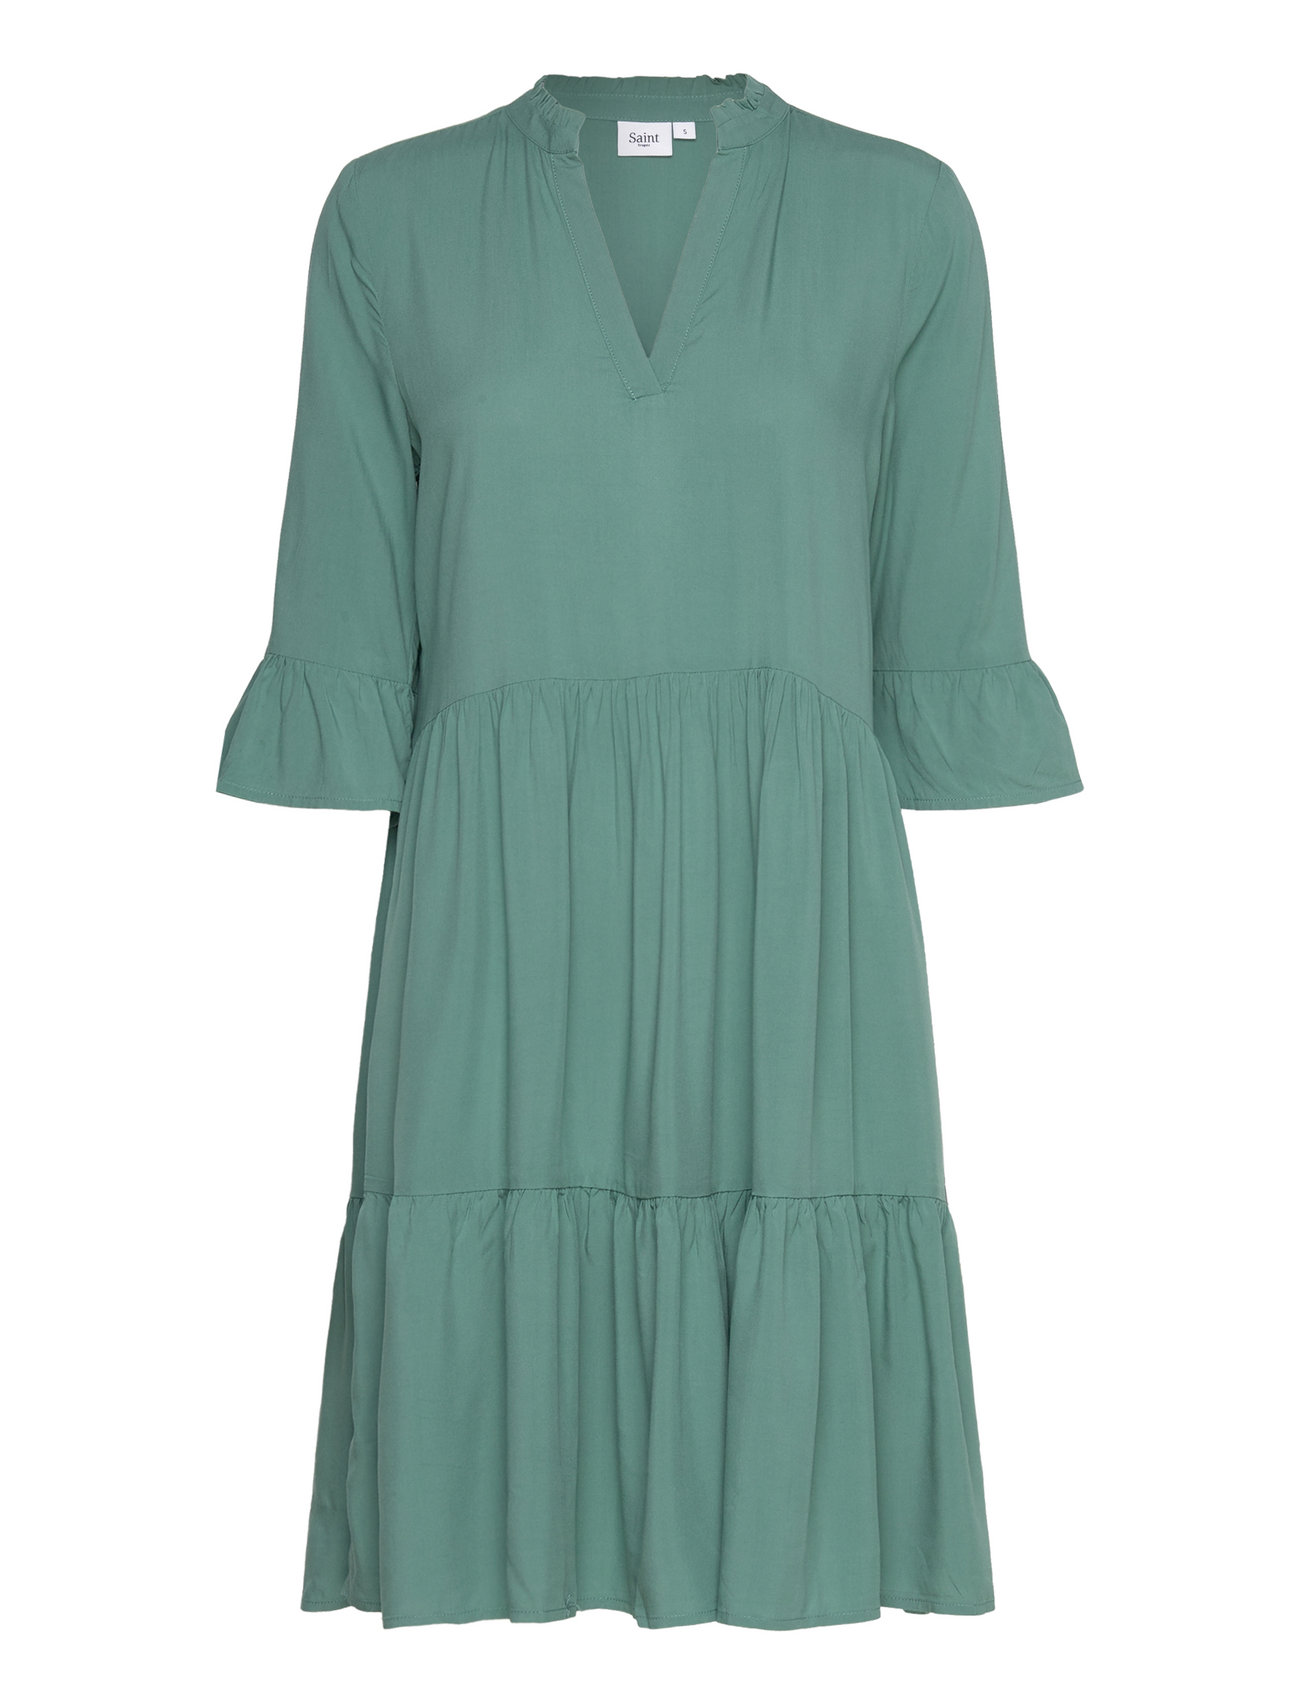 Booztlet einkaufen Edasz Tropez kleider Dress – Saint – bei